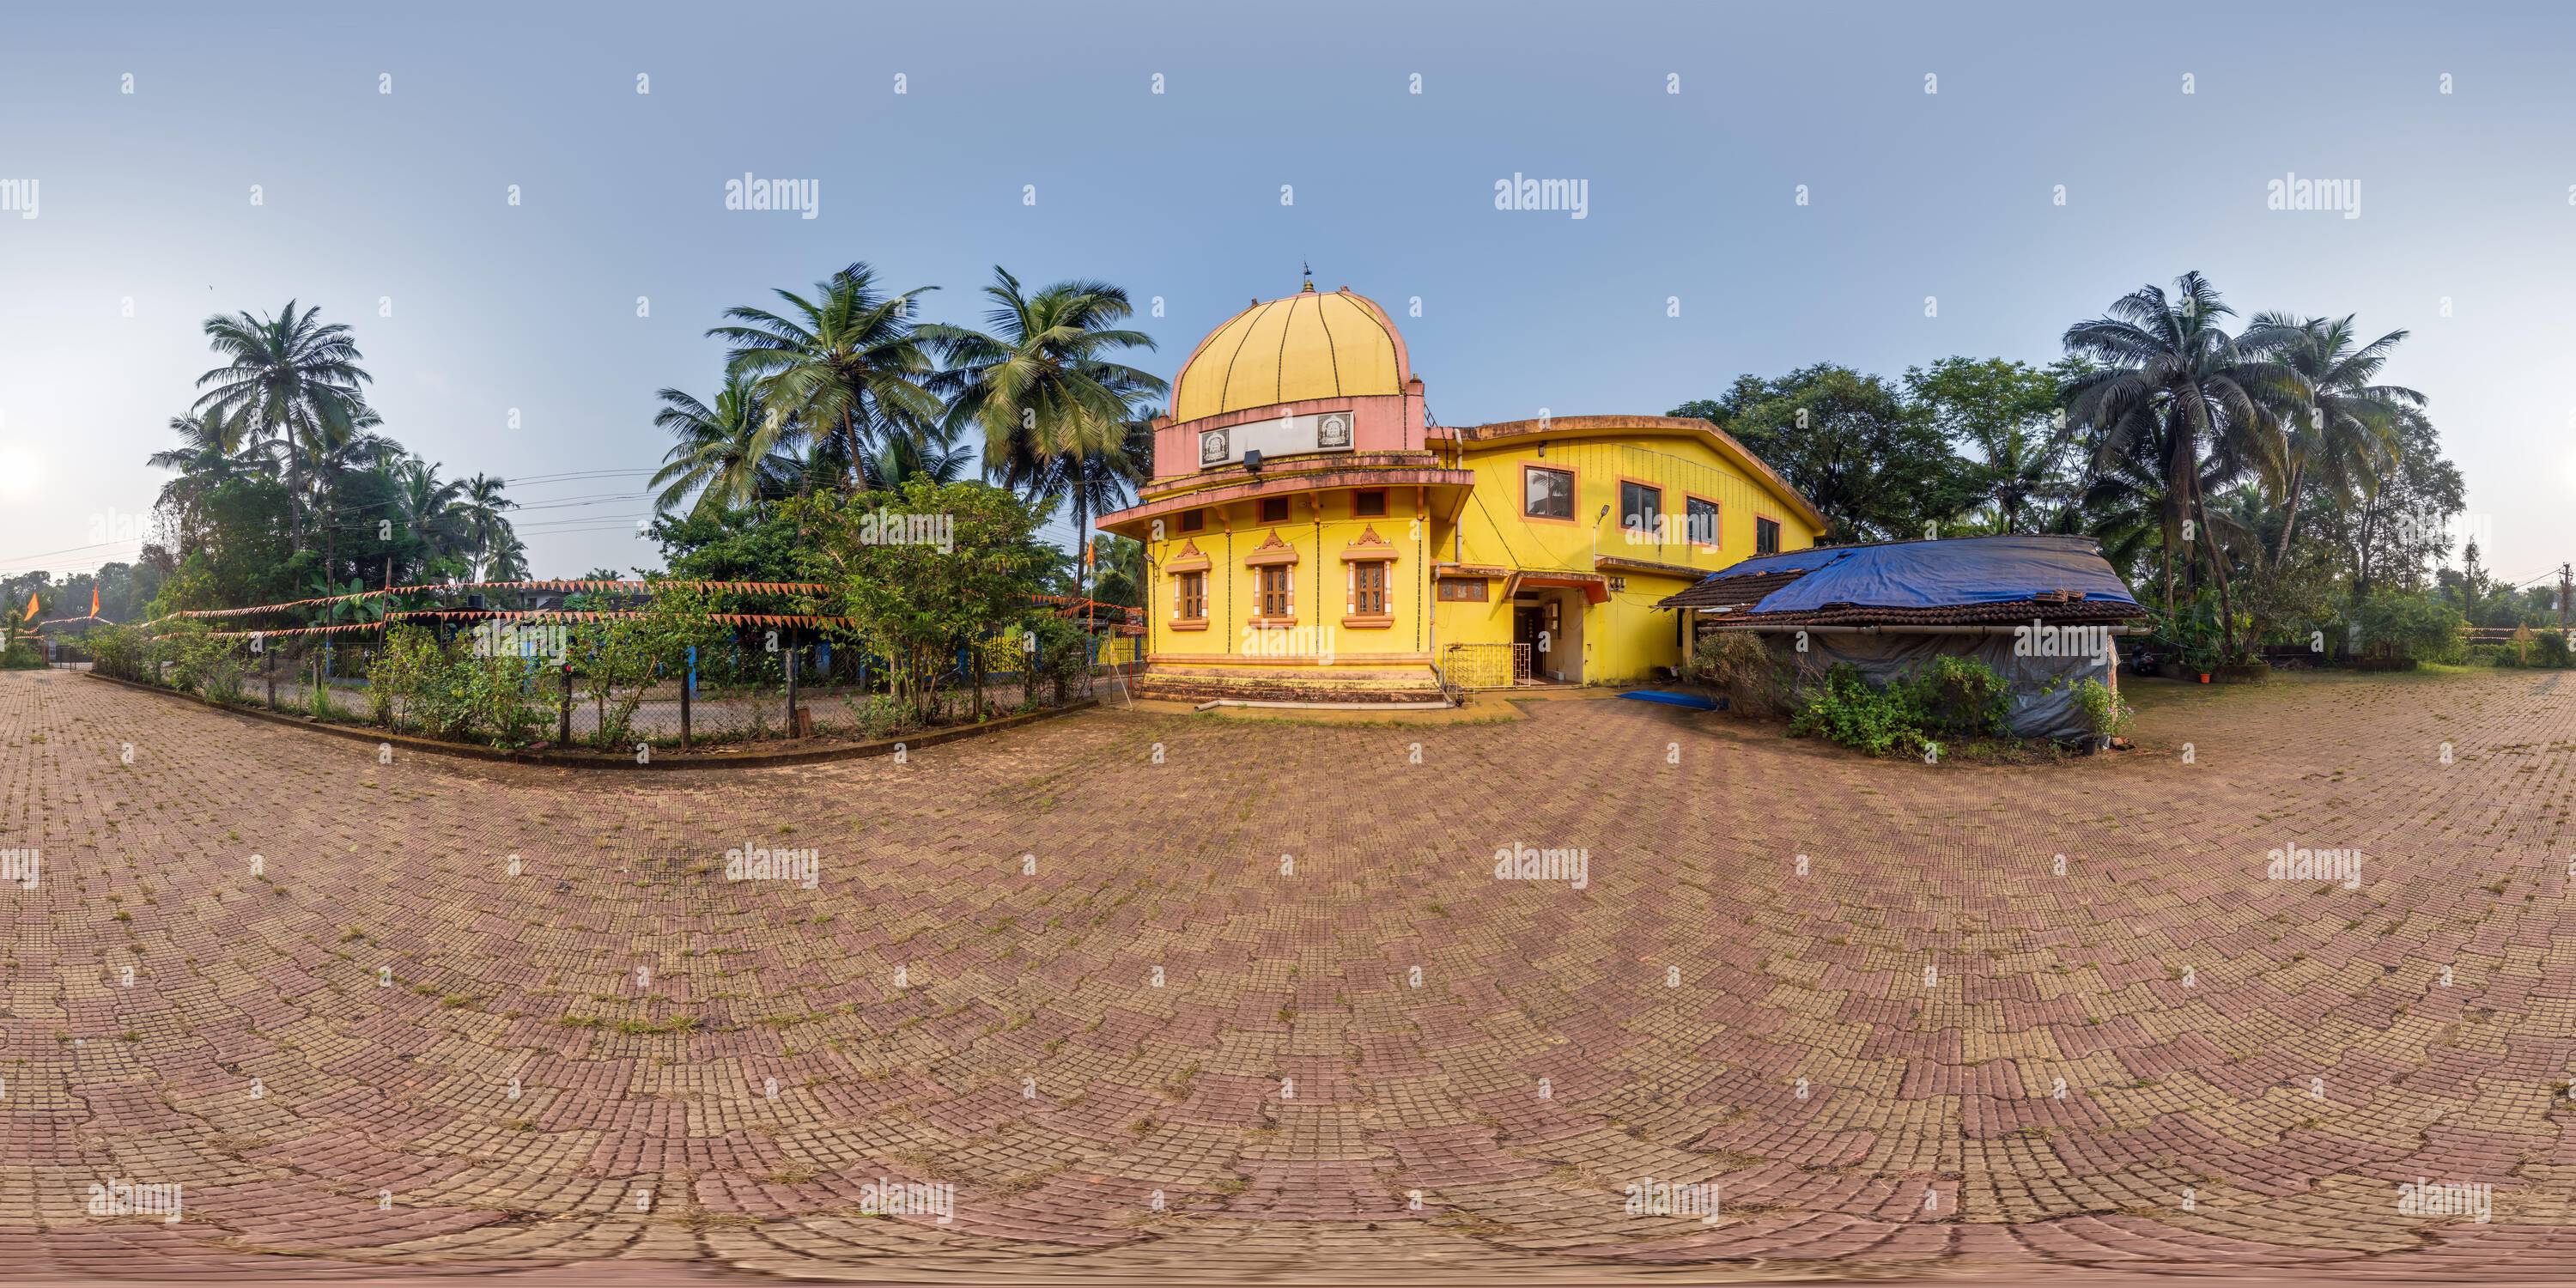 Vue panoramique à 360° de Plein panorama hdri 360 près du temple hindou de la déesse laxmi dans la jungle parmi les palmiers dans le village tropical indien en projection équirectangulaire avec zenit